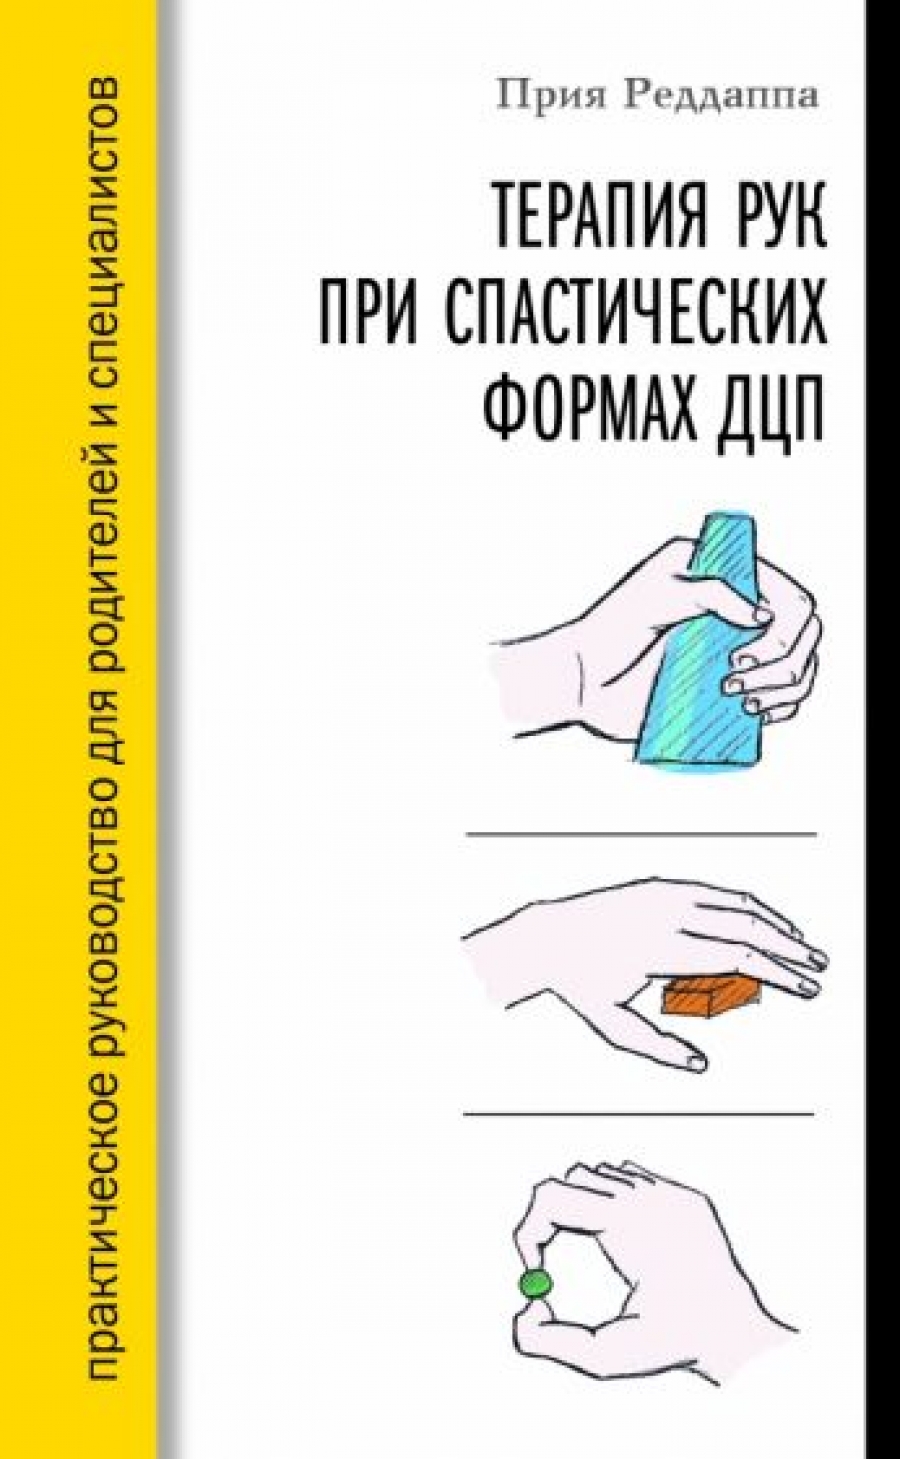 Реддапа П. - Терапия рук при спастических формах ДЦП 